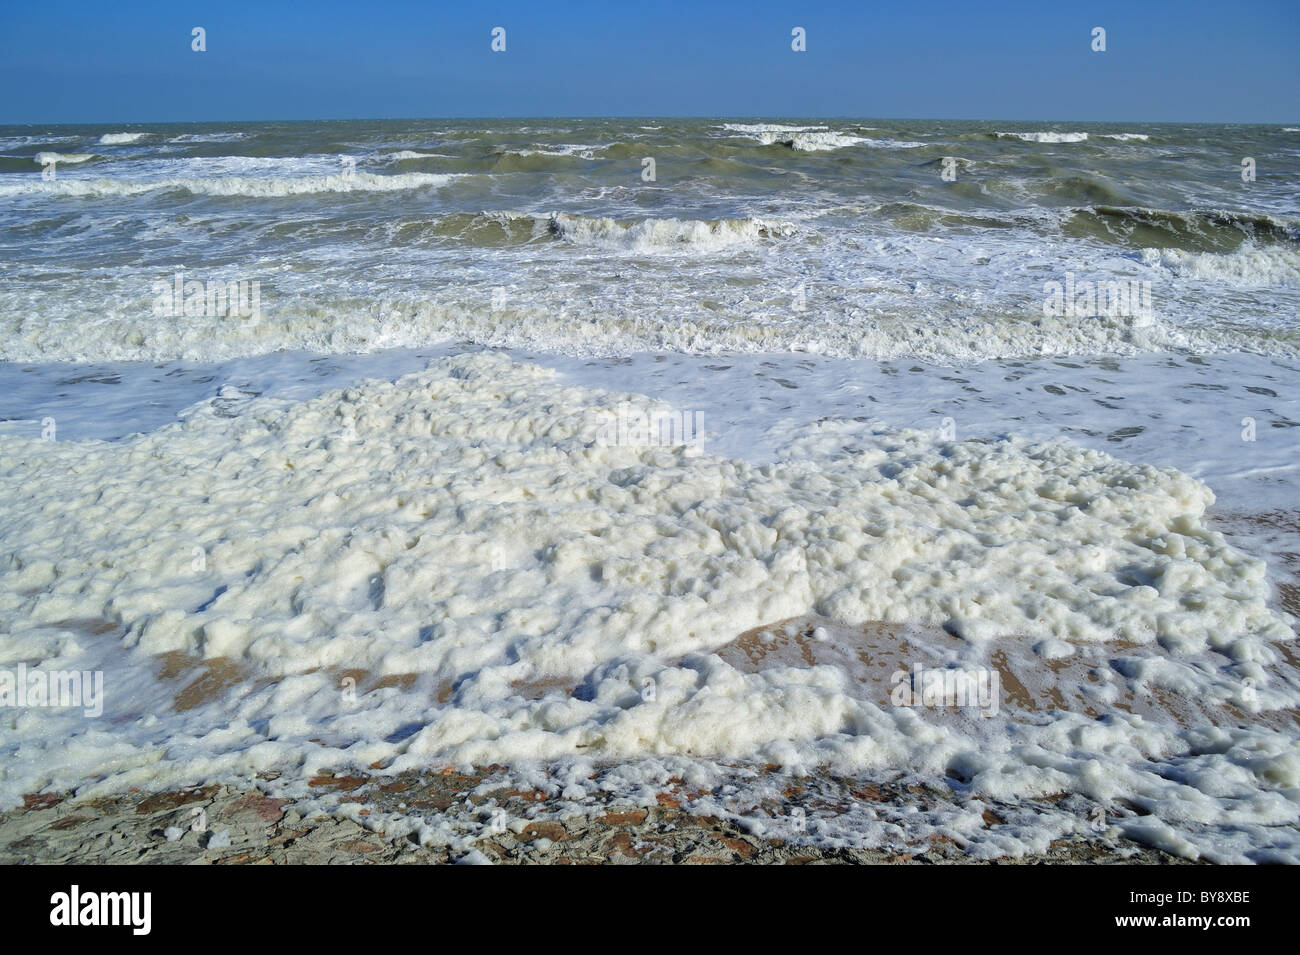 Schiuma di mare oceano / schiuma / spiaggia schiuma formata durante la burrascosa condizioni e a seguito di una fioritura algale Foto Stock